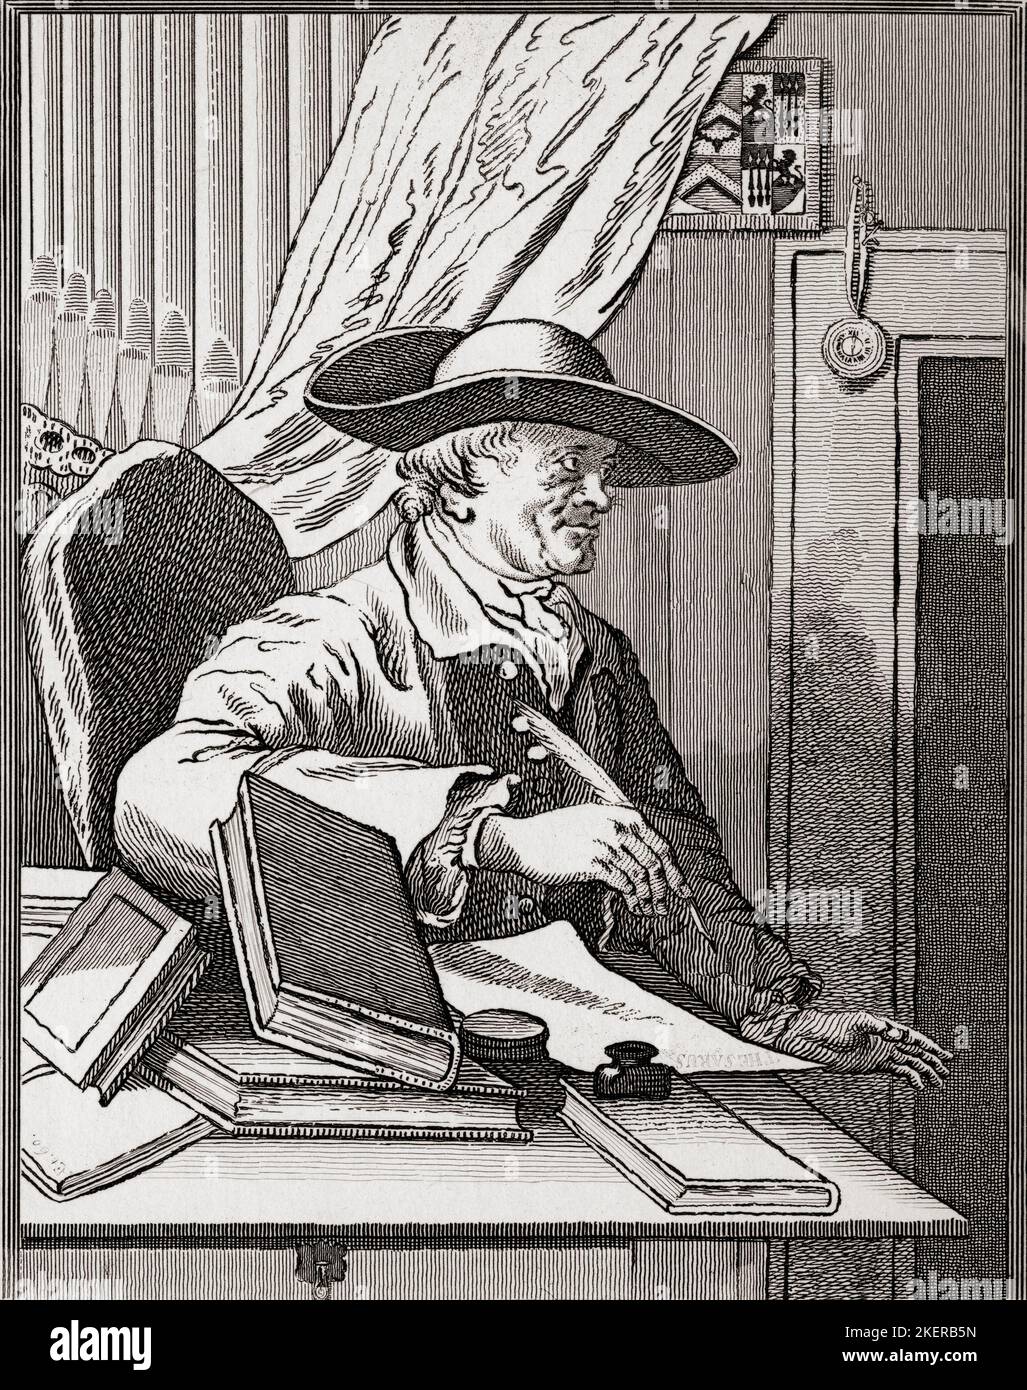 Dr. Thomas Morell, 1703 a 1784. Erudito, crítico y libretista inglés. De The Works of Hogarth publicado en Londres en 1833. Foto de stock